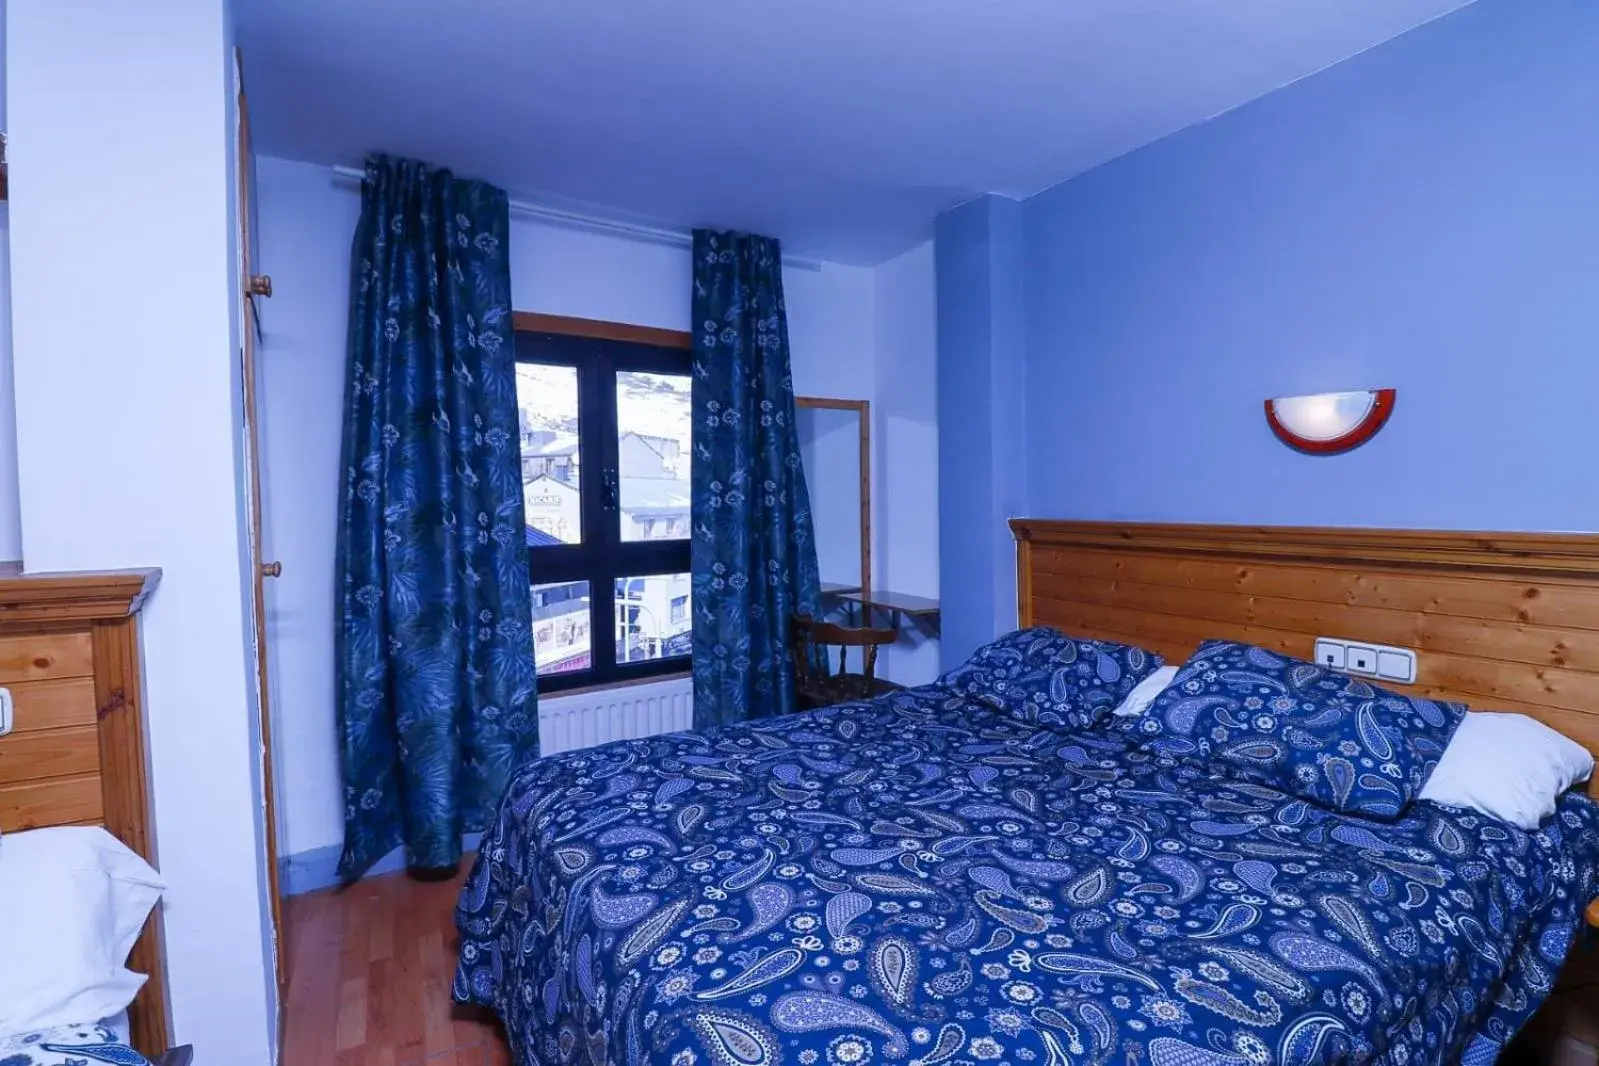 Bedroom, Room Photo in Hotel Merino